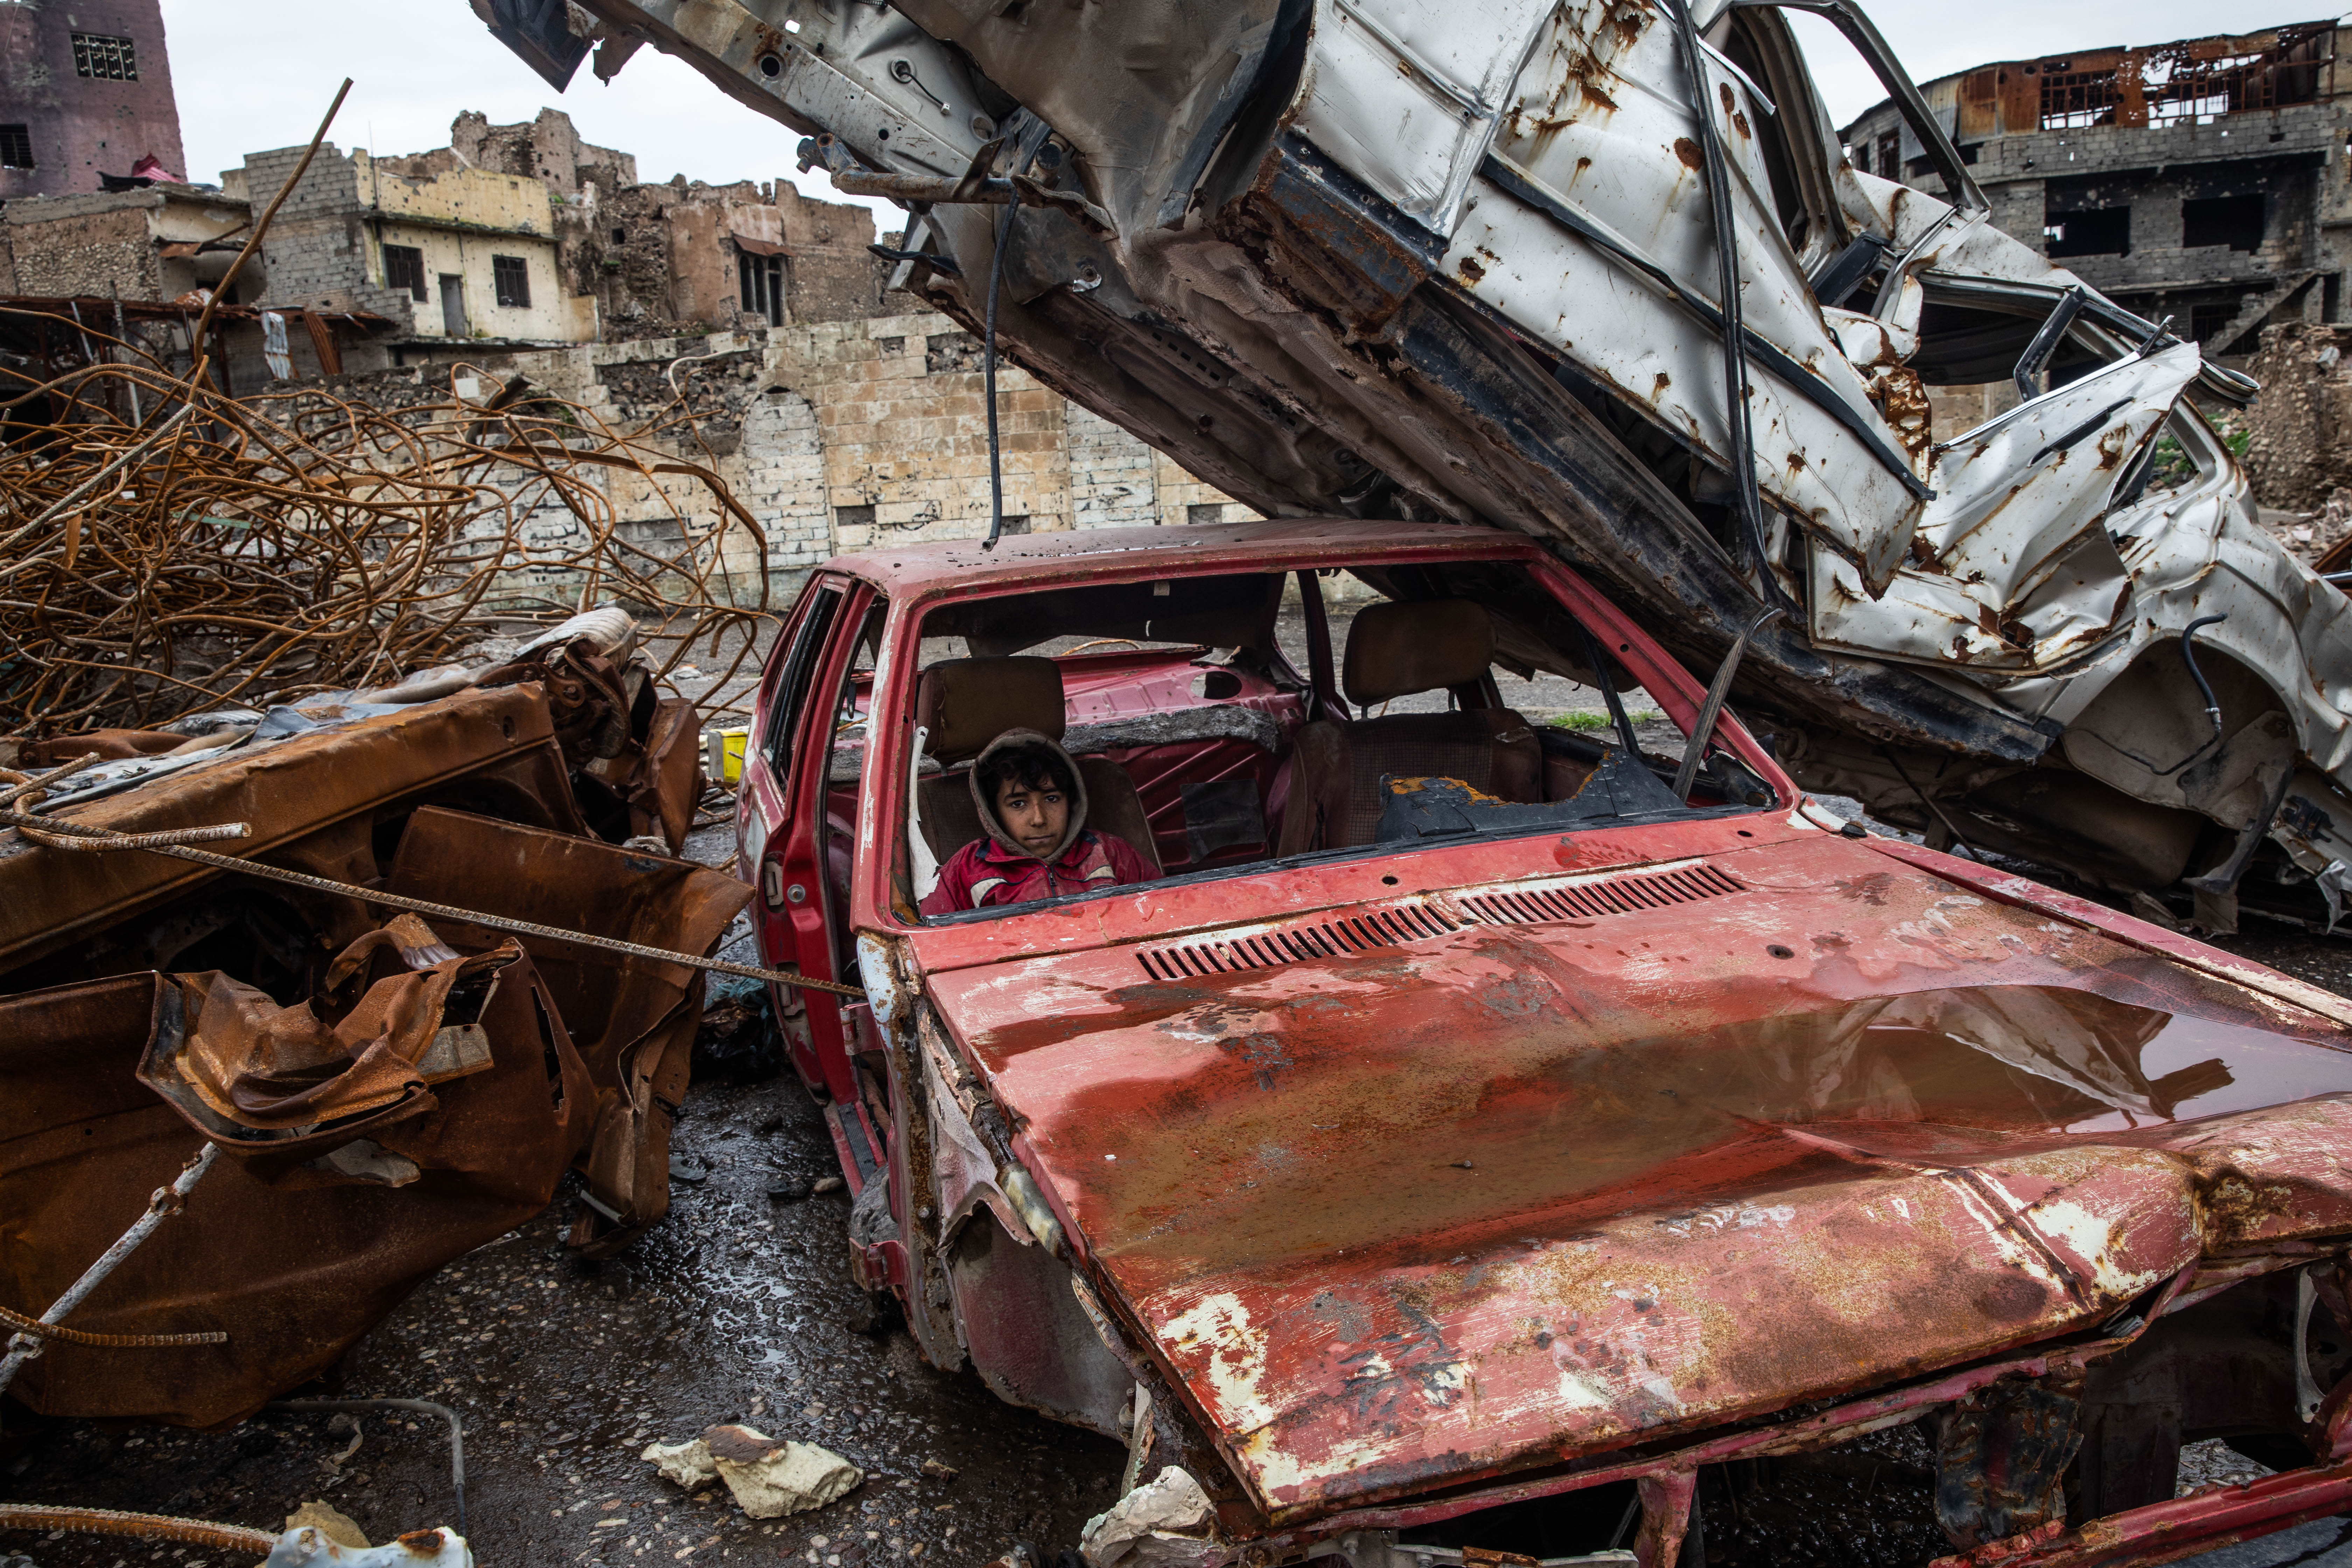 Mosul scrapyard